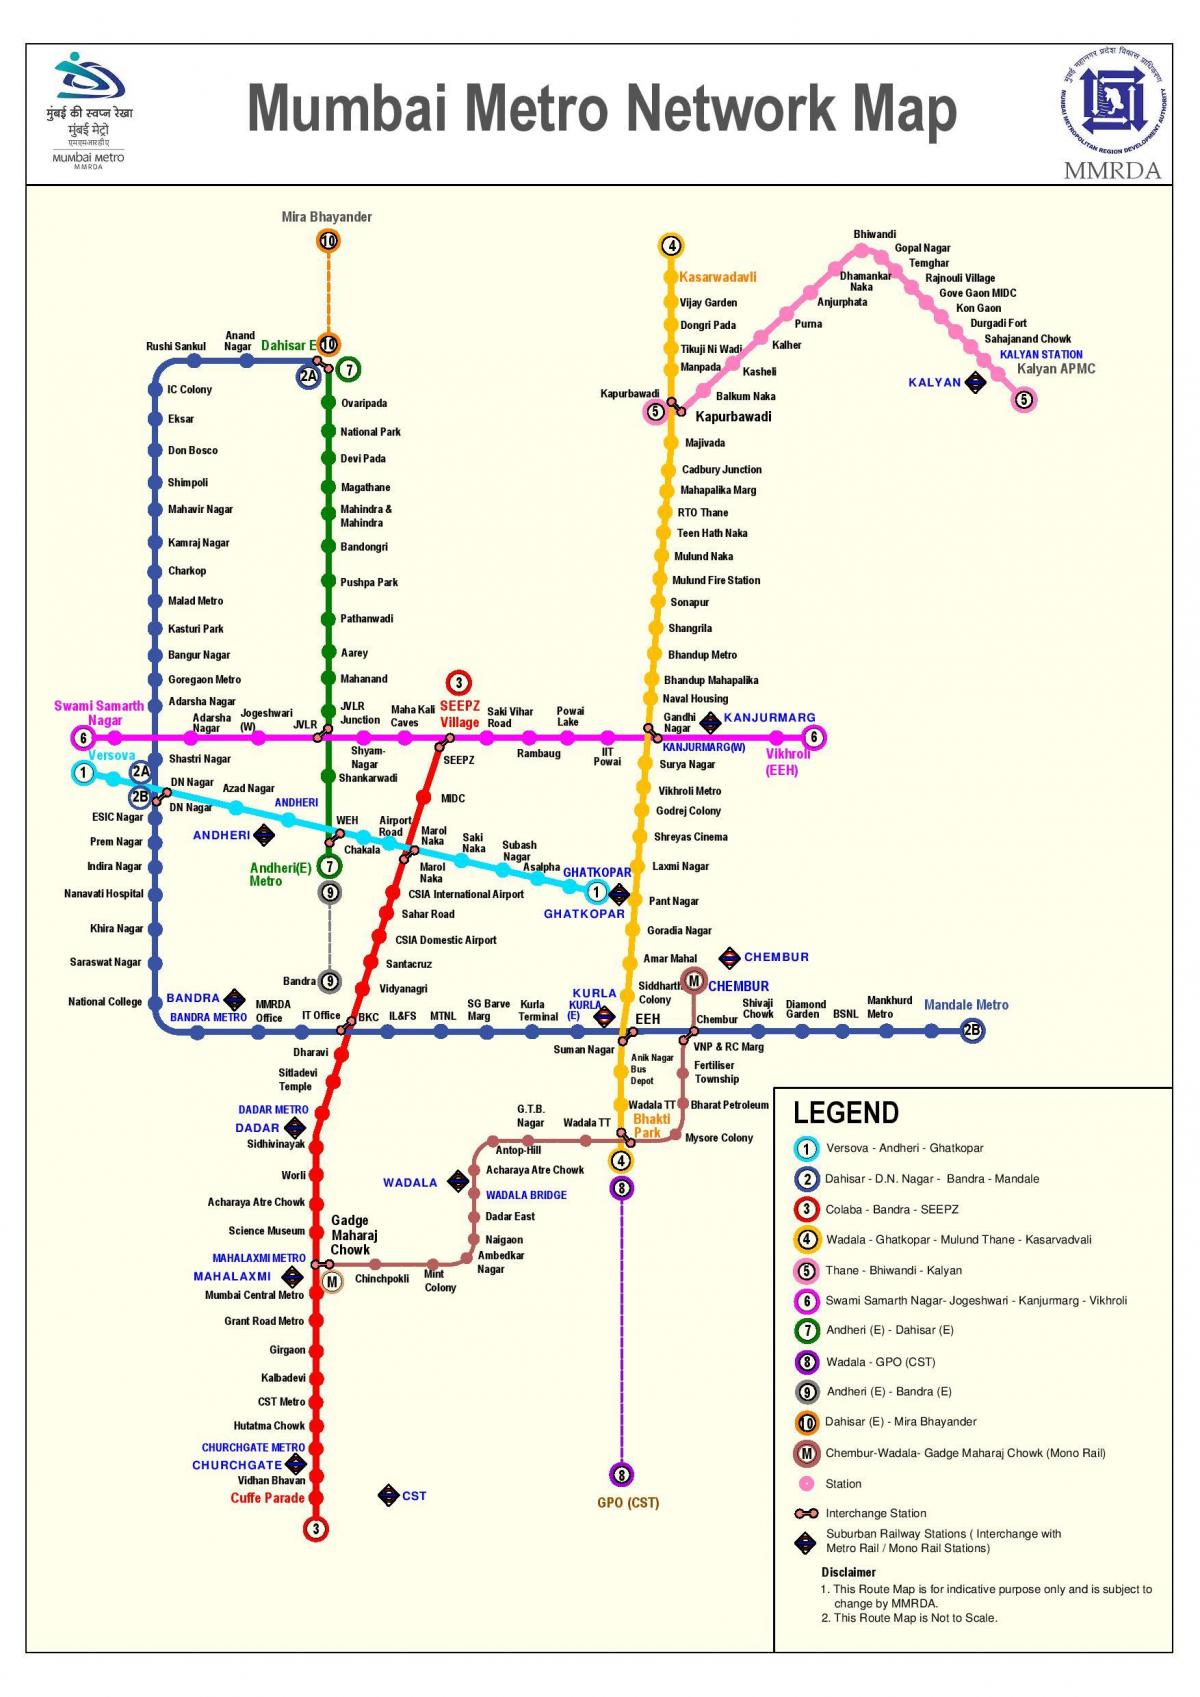 Mumbajus metro linijos 3 maršruto žemėlapį